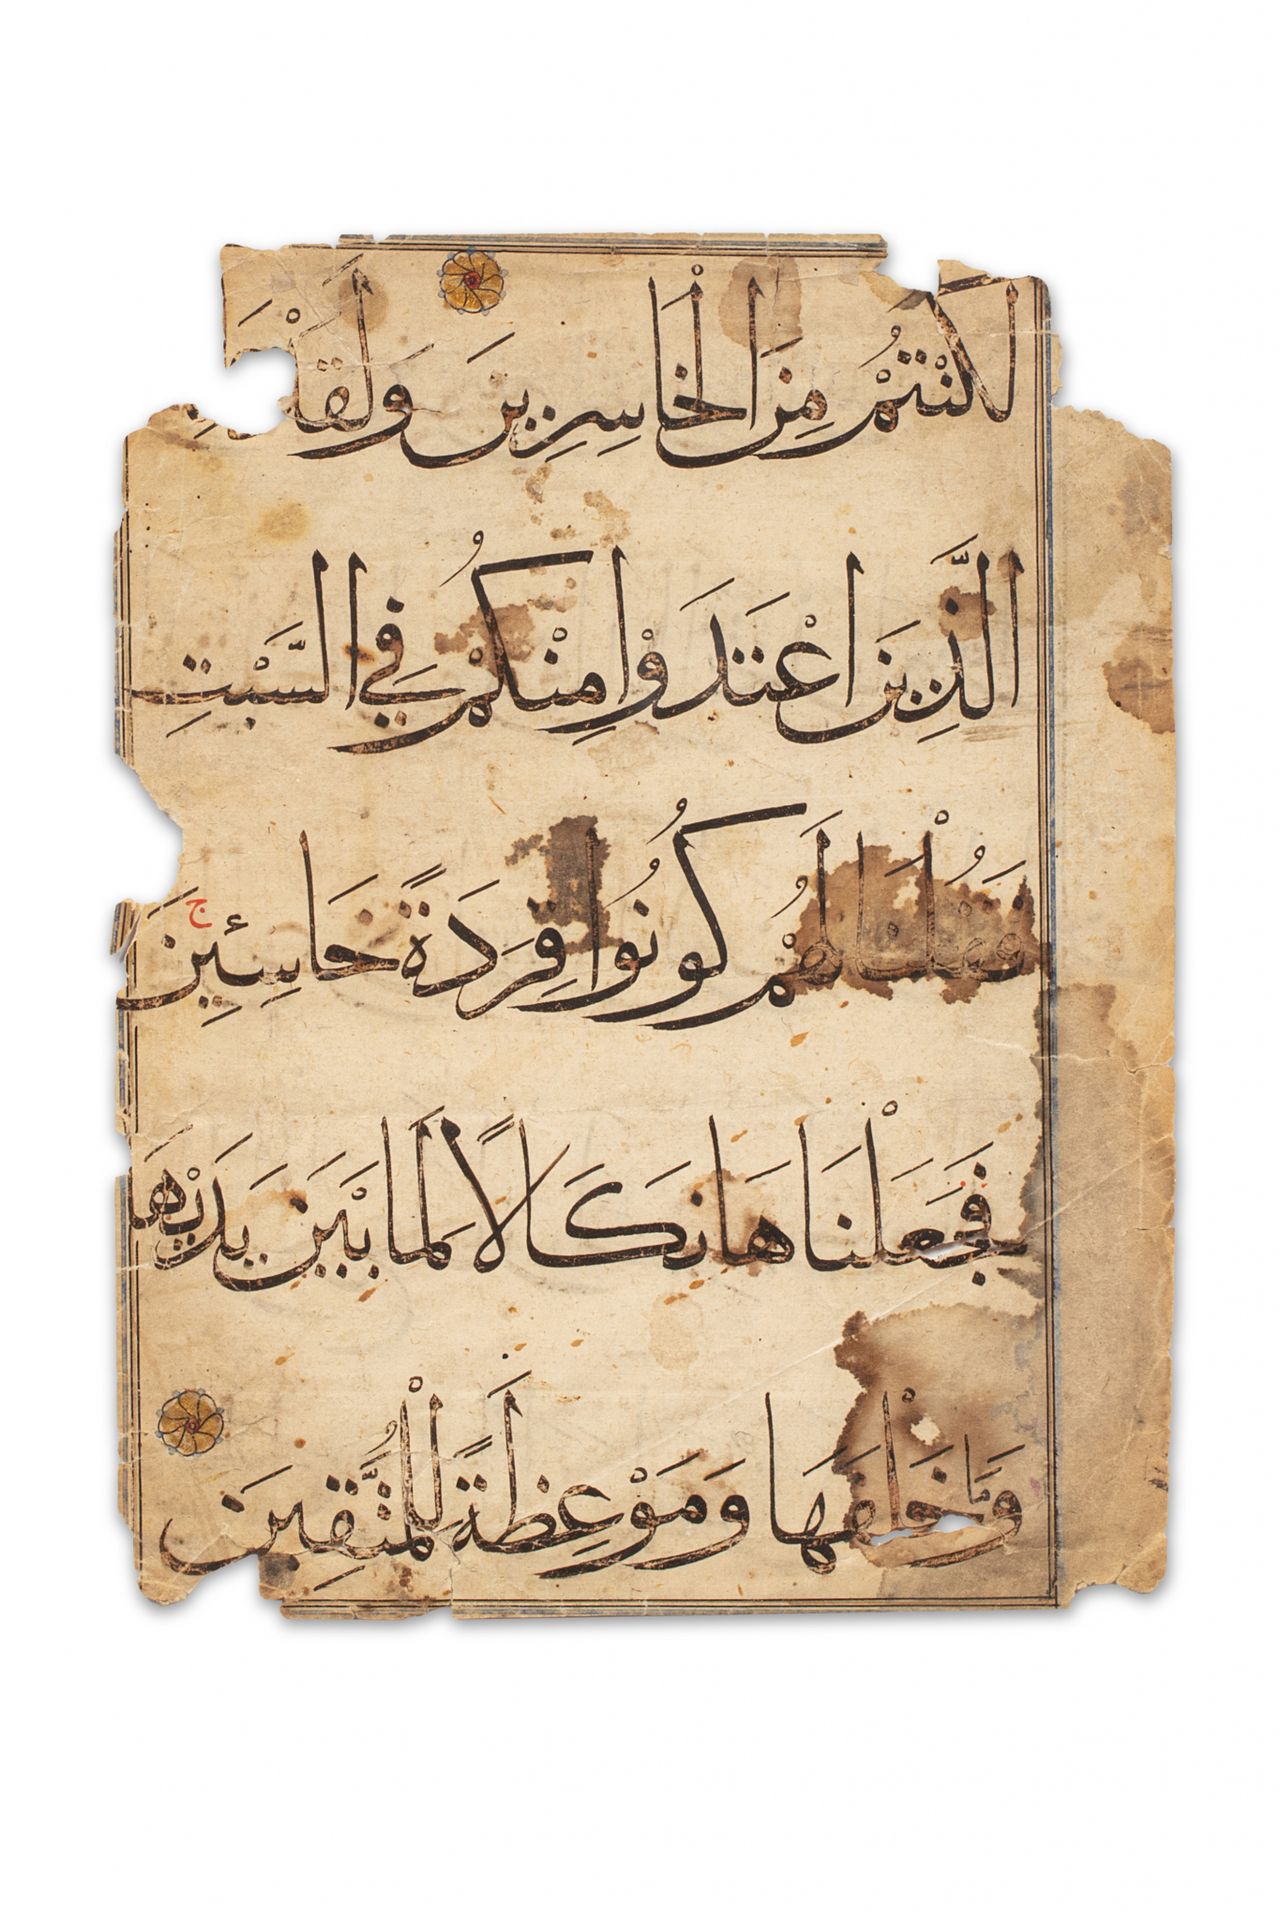 Folio de Coran mamlouque Egitto, XV secolo

Un grande foglio coranico scritto in&hellip;